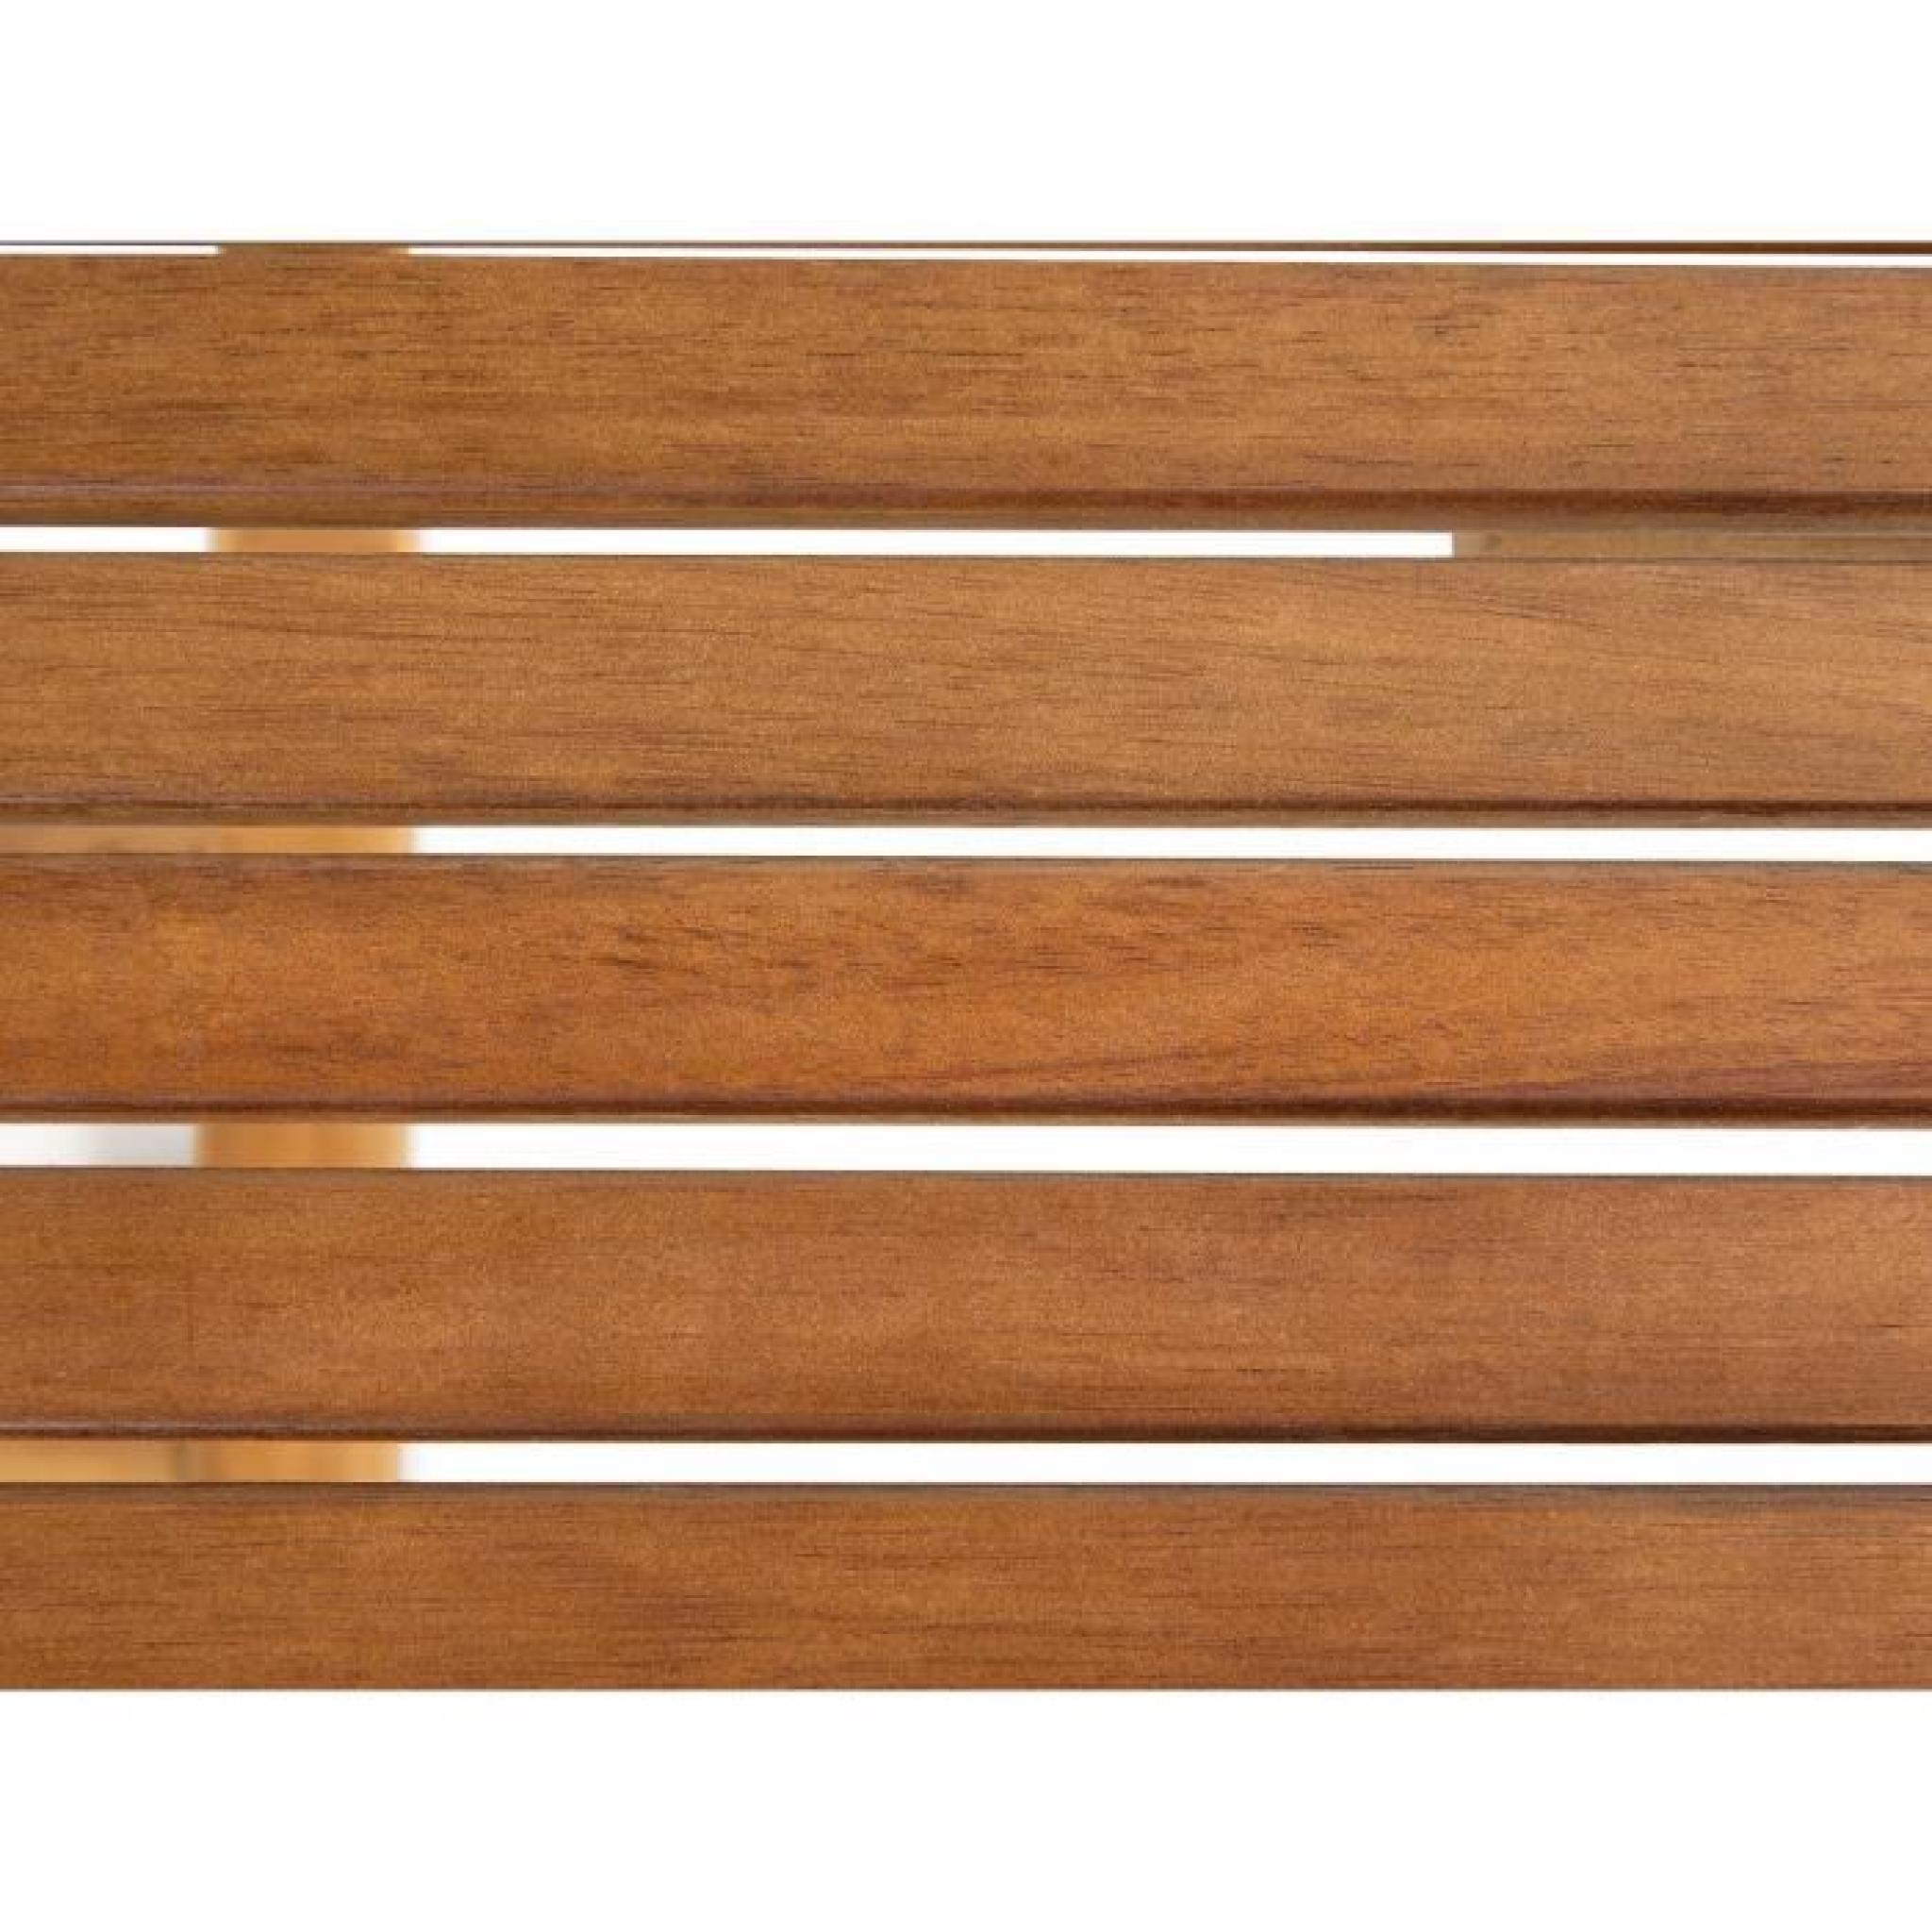 Table de jardin - table en bois ovale à rallonges - brun - Maui pas cher